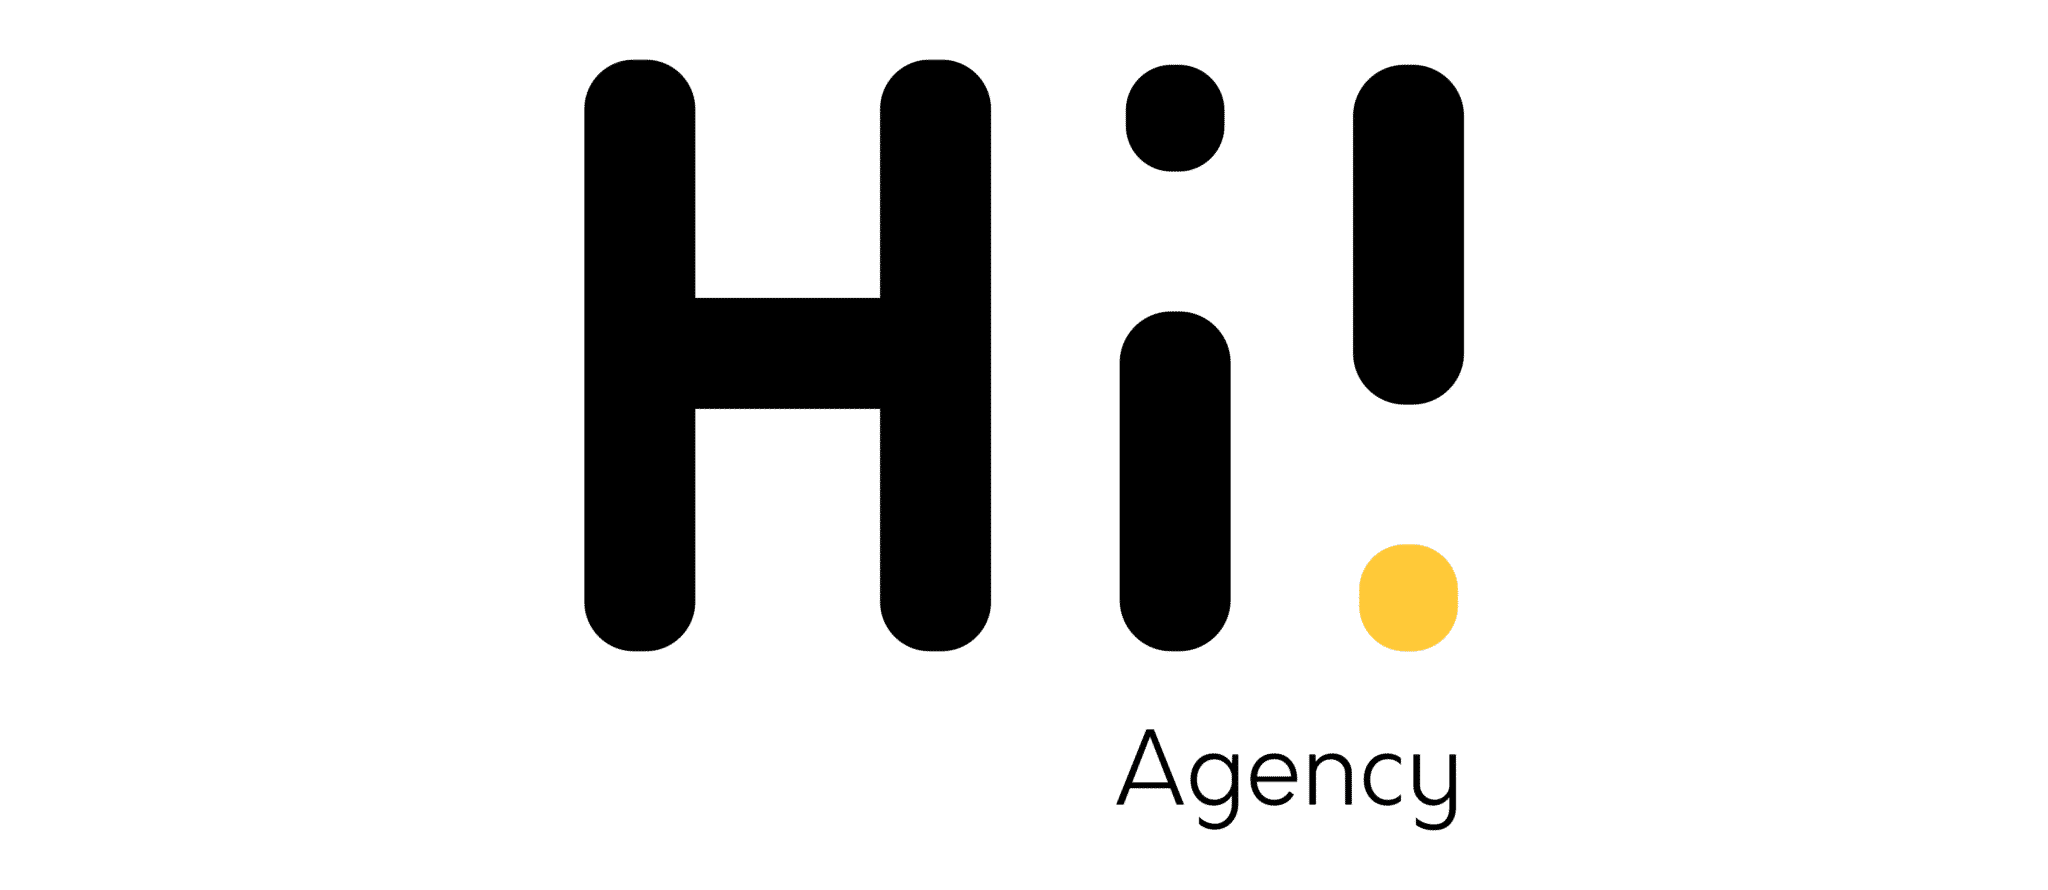 Hi Agency